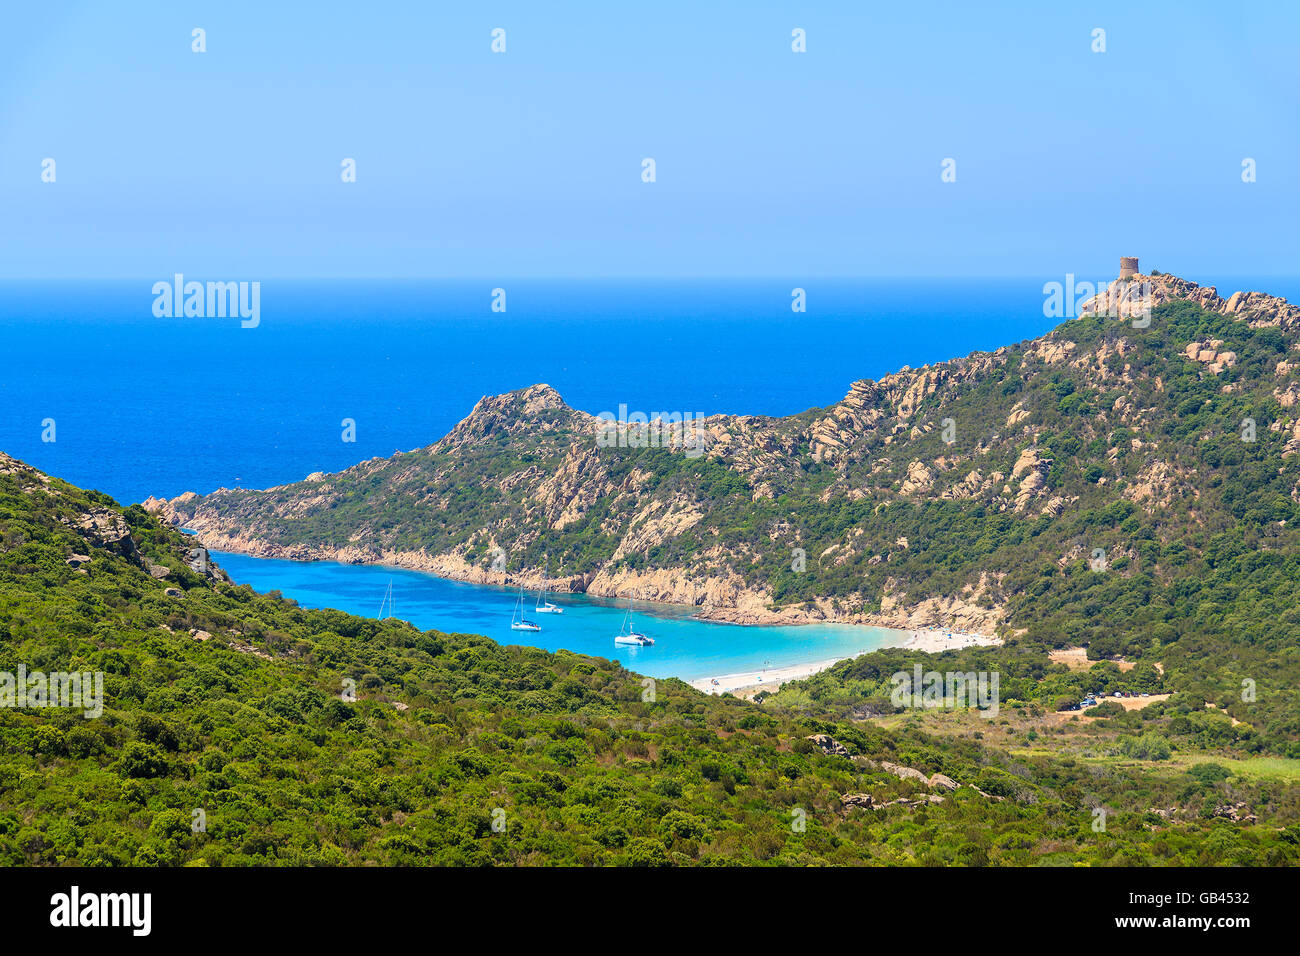 Una vista de la hermosa bahía en la costa de la isla de Córcega, Francia Foto de stock